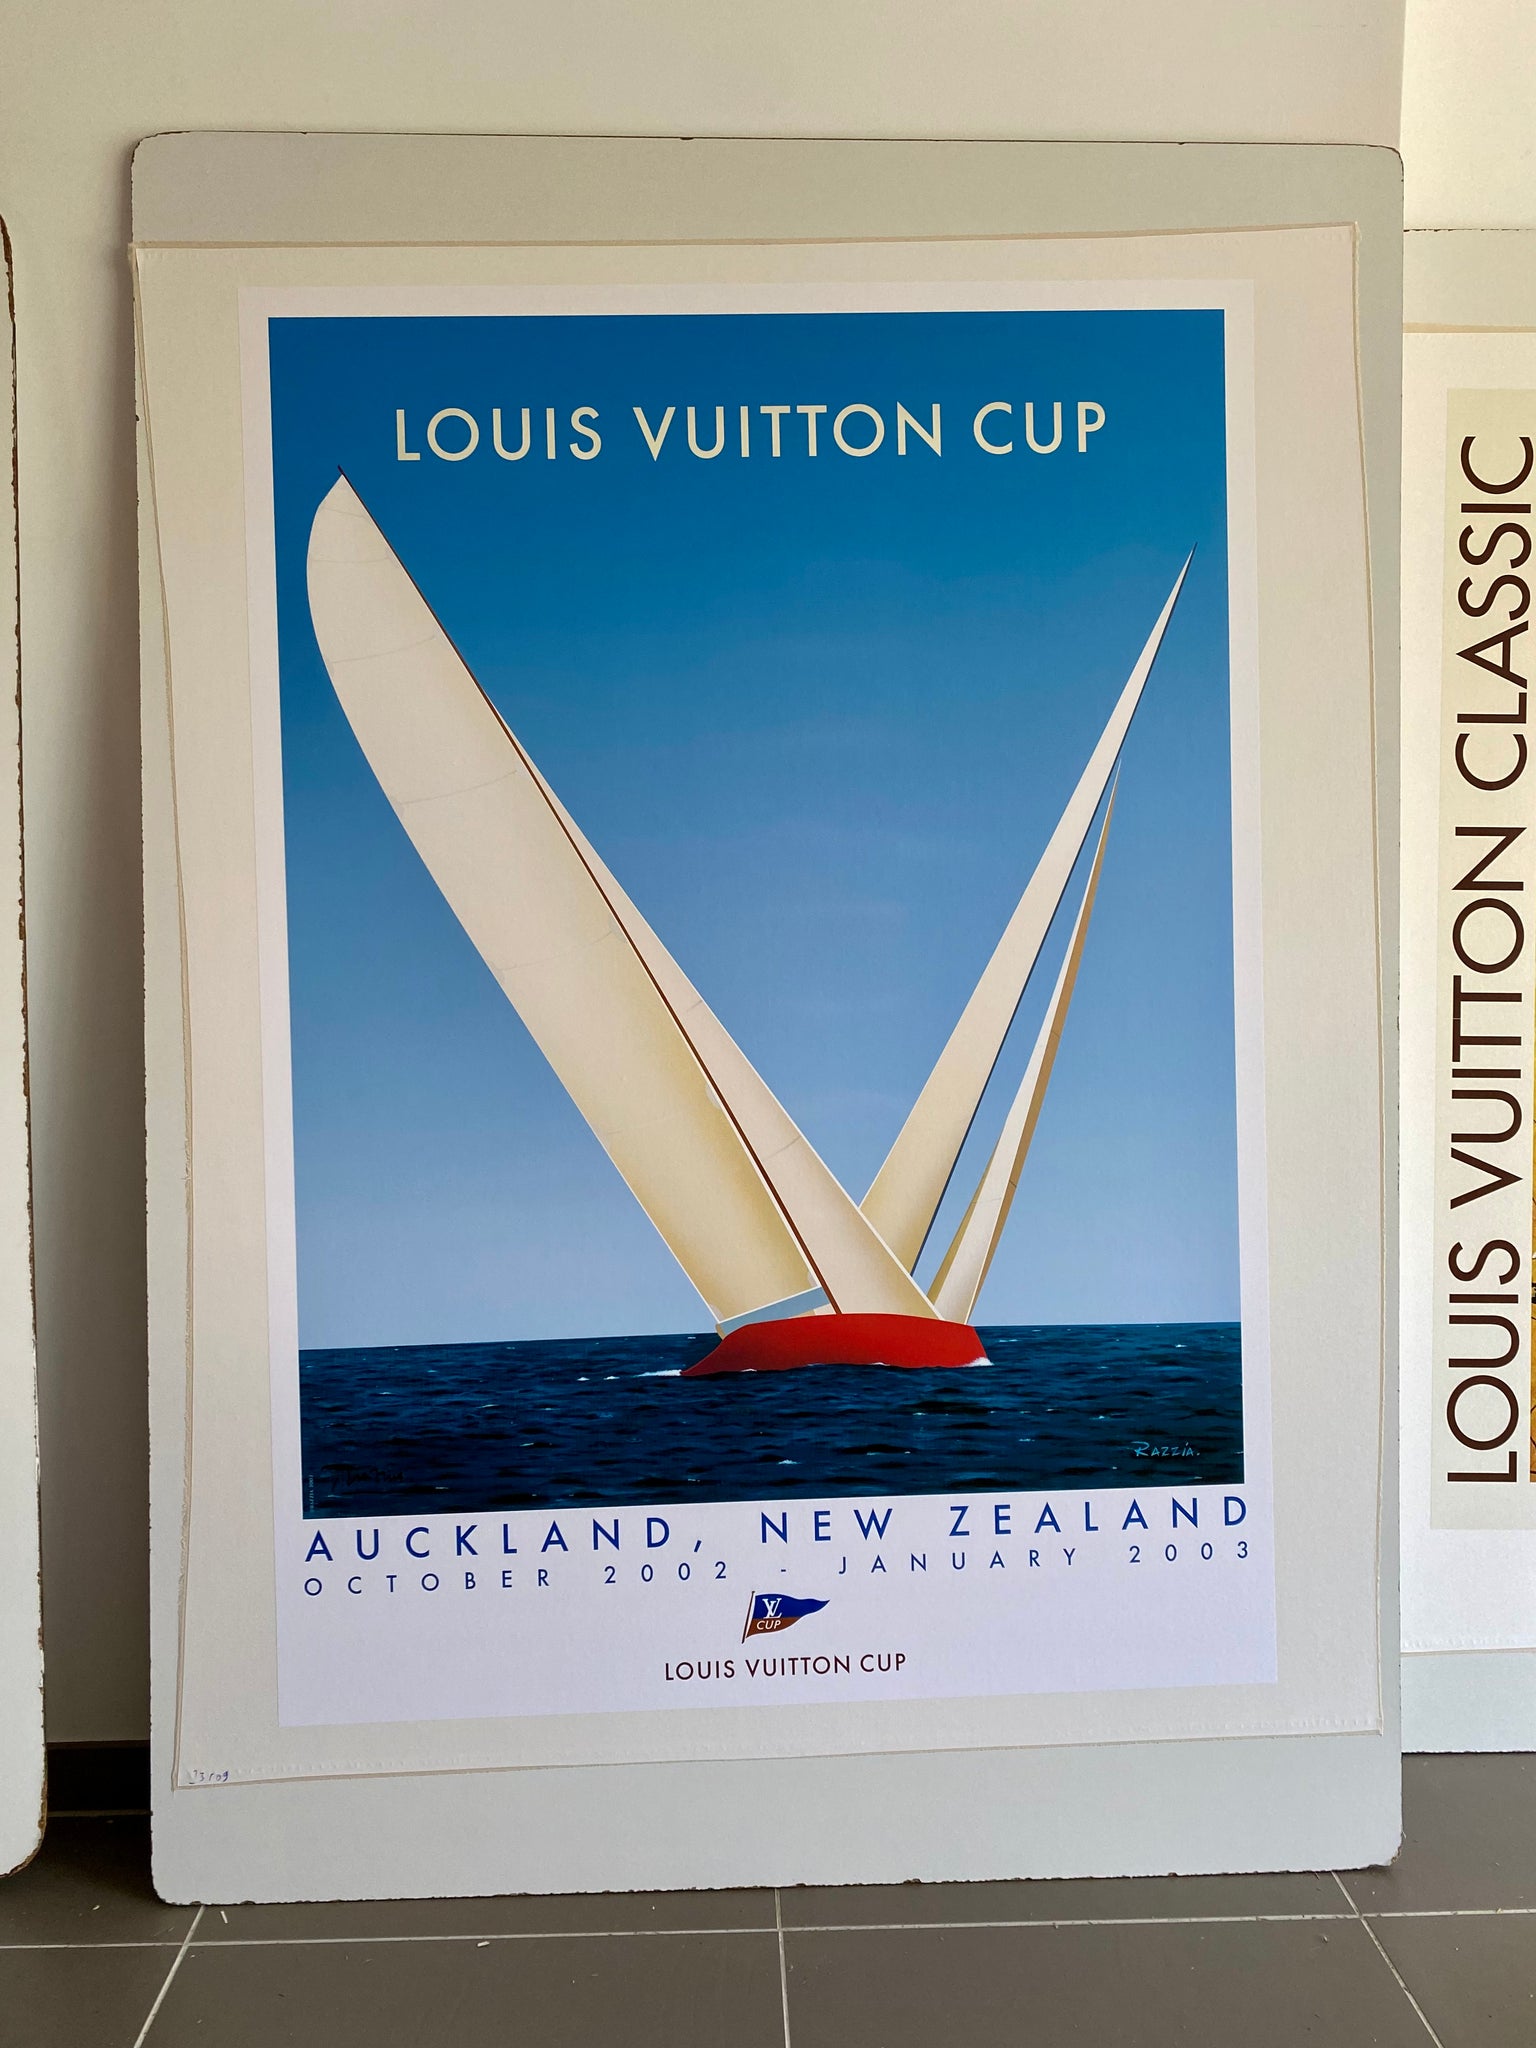 Affiche  Louis Vuitton Cup - Auckland New Zeland Par Razzia, 2002    Affiche originale de Gerard Courbouleix alias Razzia, pour la Louis Vuitton cup  se déroulant à Auckland en Zélande, entre octobre 2002 et Janvier 2003.    L'affiche est signée en bas à droite par la main de l'artiste